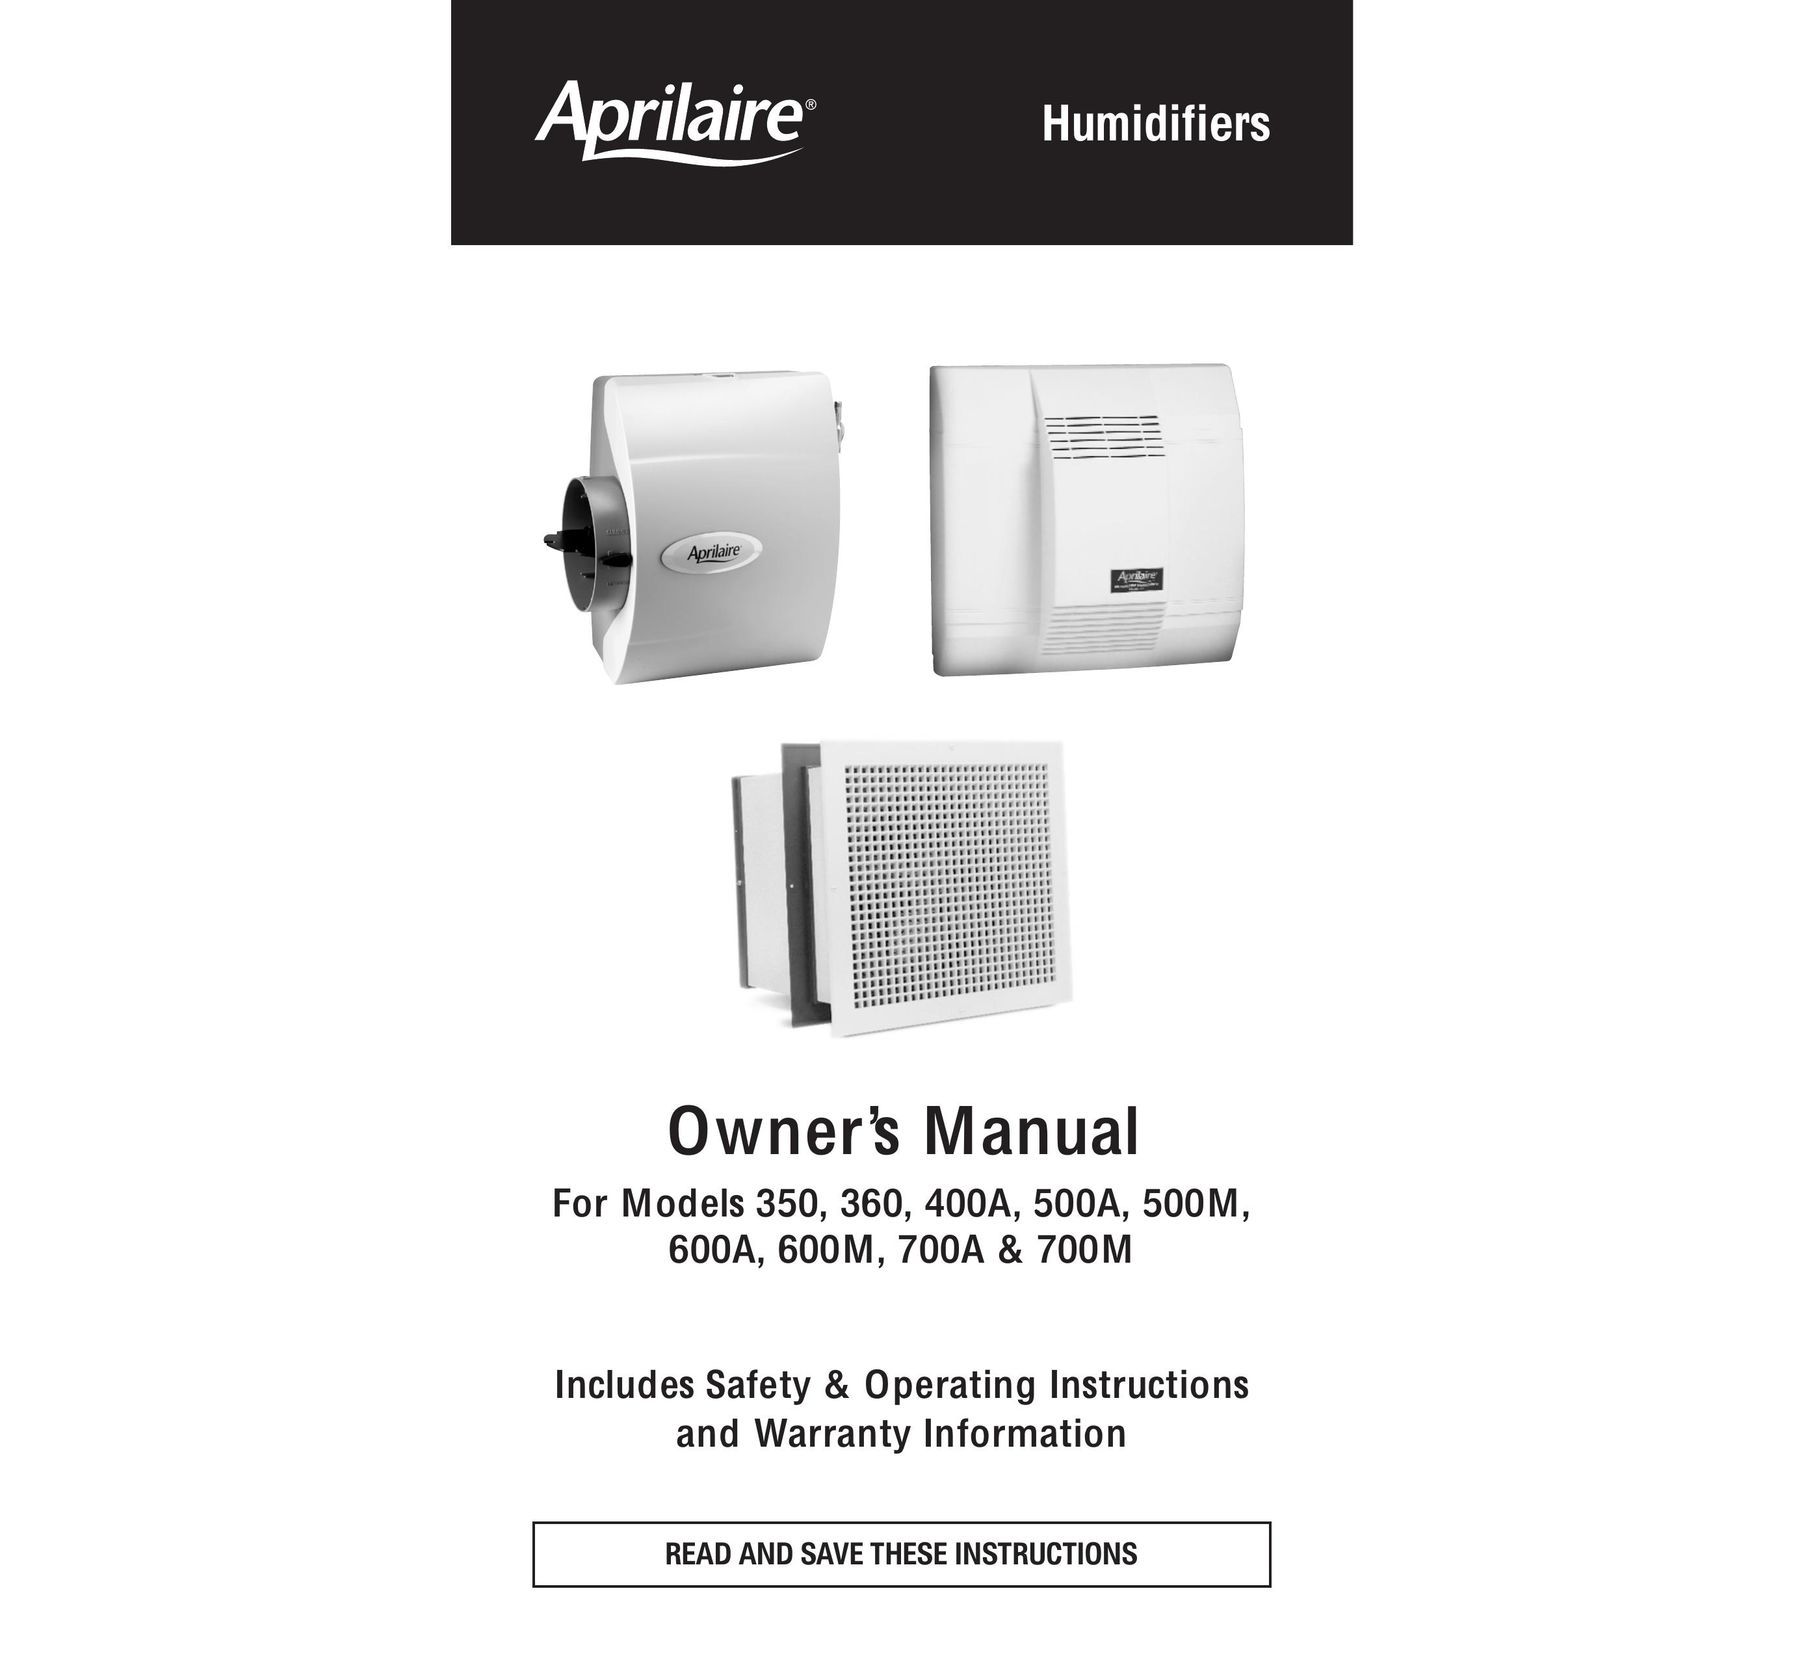 Aprilaire 360 Dehumidifier User Manual